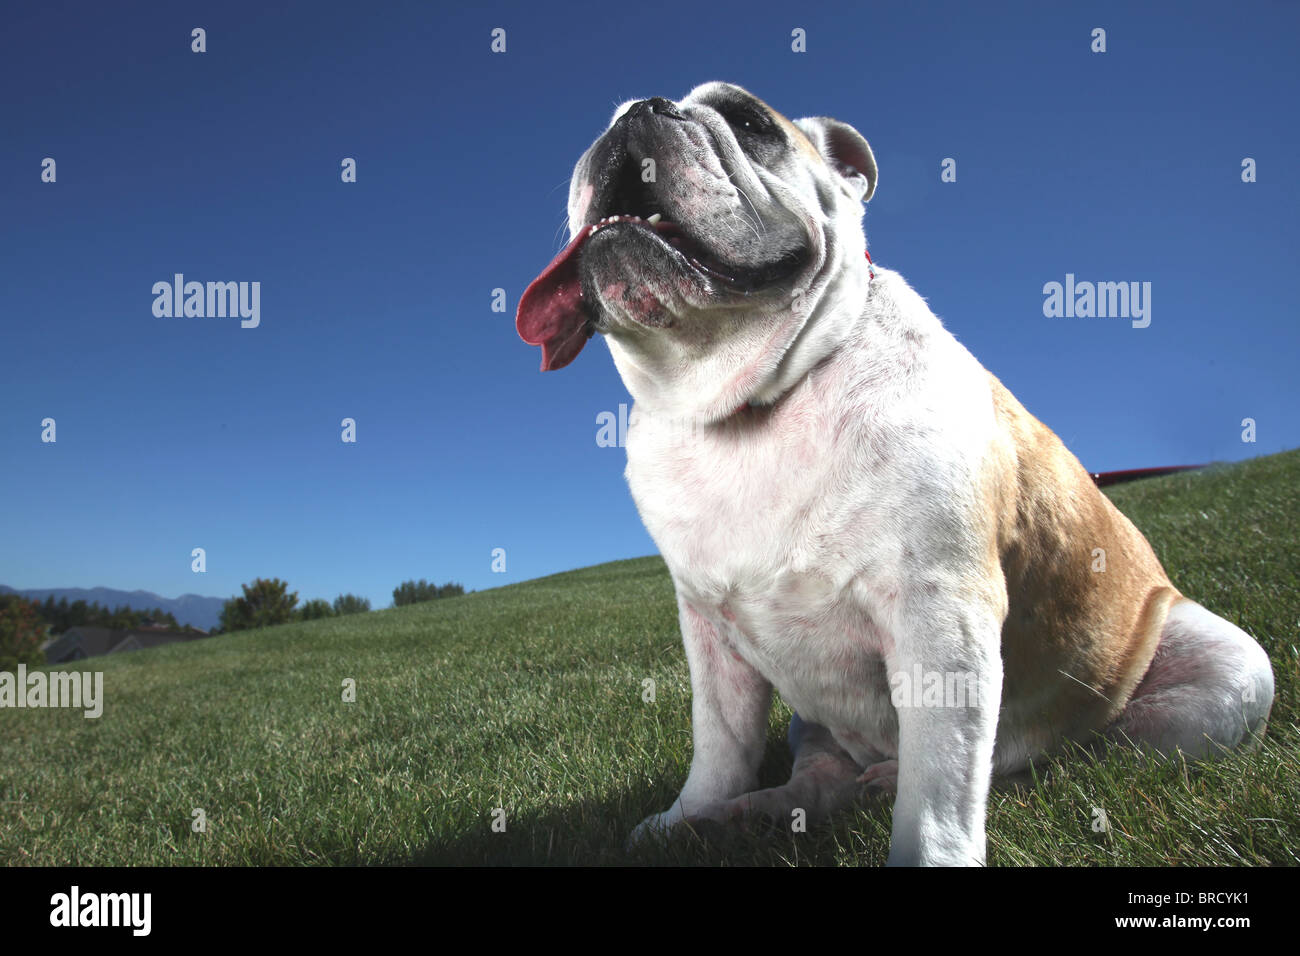 Portrait of happy bull dog sitting in grass w/ langue sortir de la bouche Banque D'Images